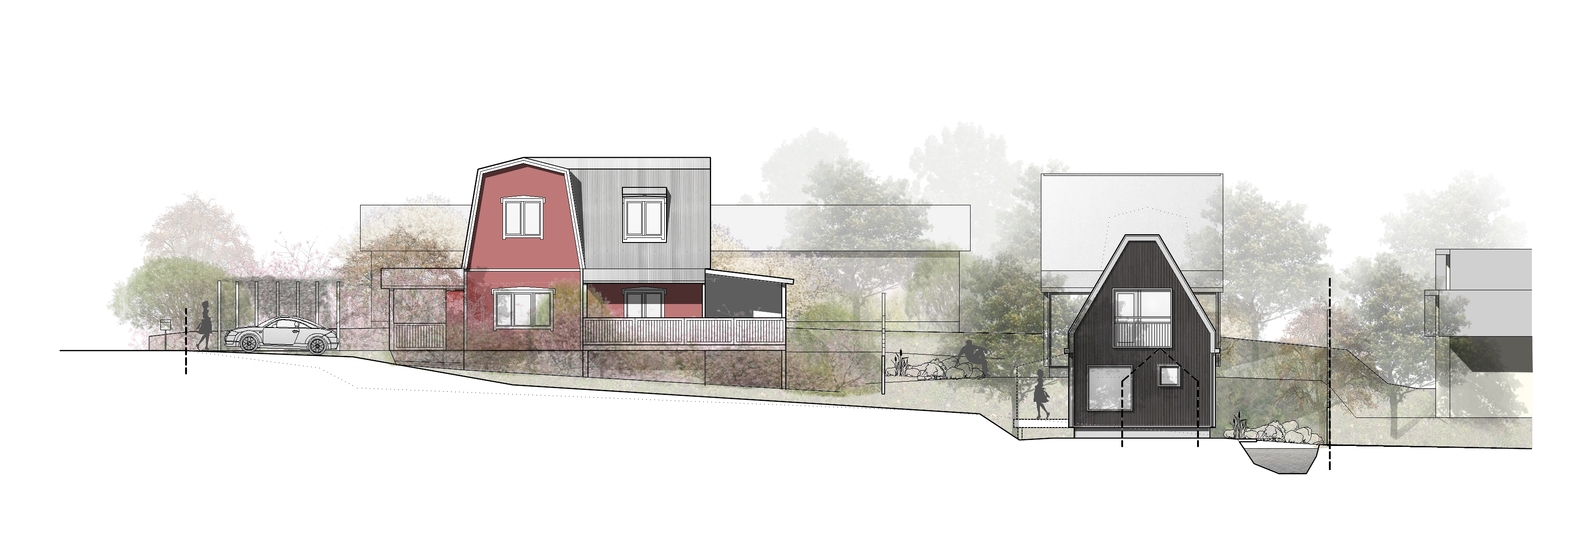 Фасады домов в маленьком коттеджном посёлке - проект